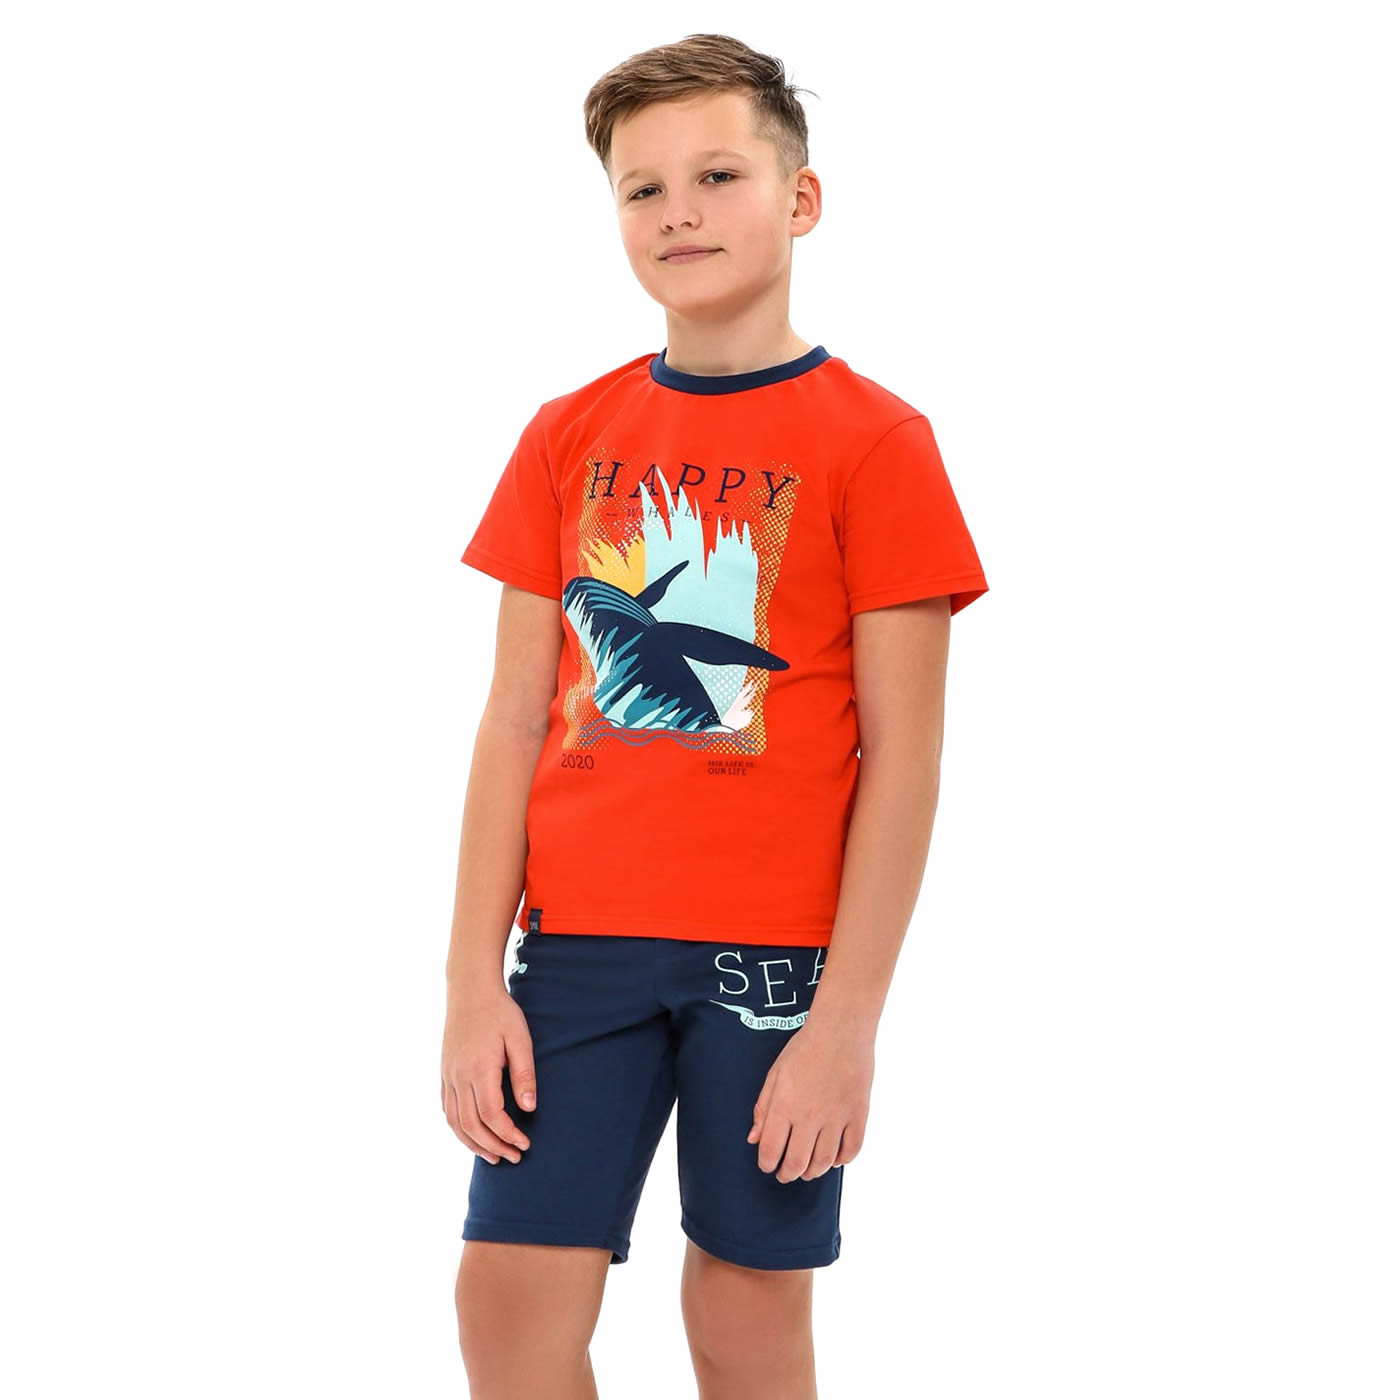 Детская футболка для мальчика, Южный ветер, красная (110549, 110550), Смил